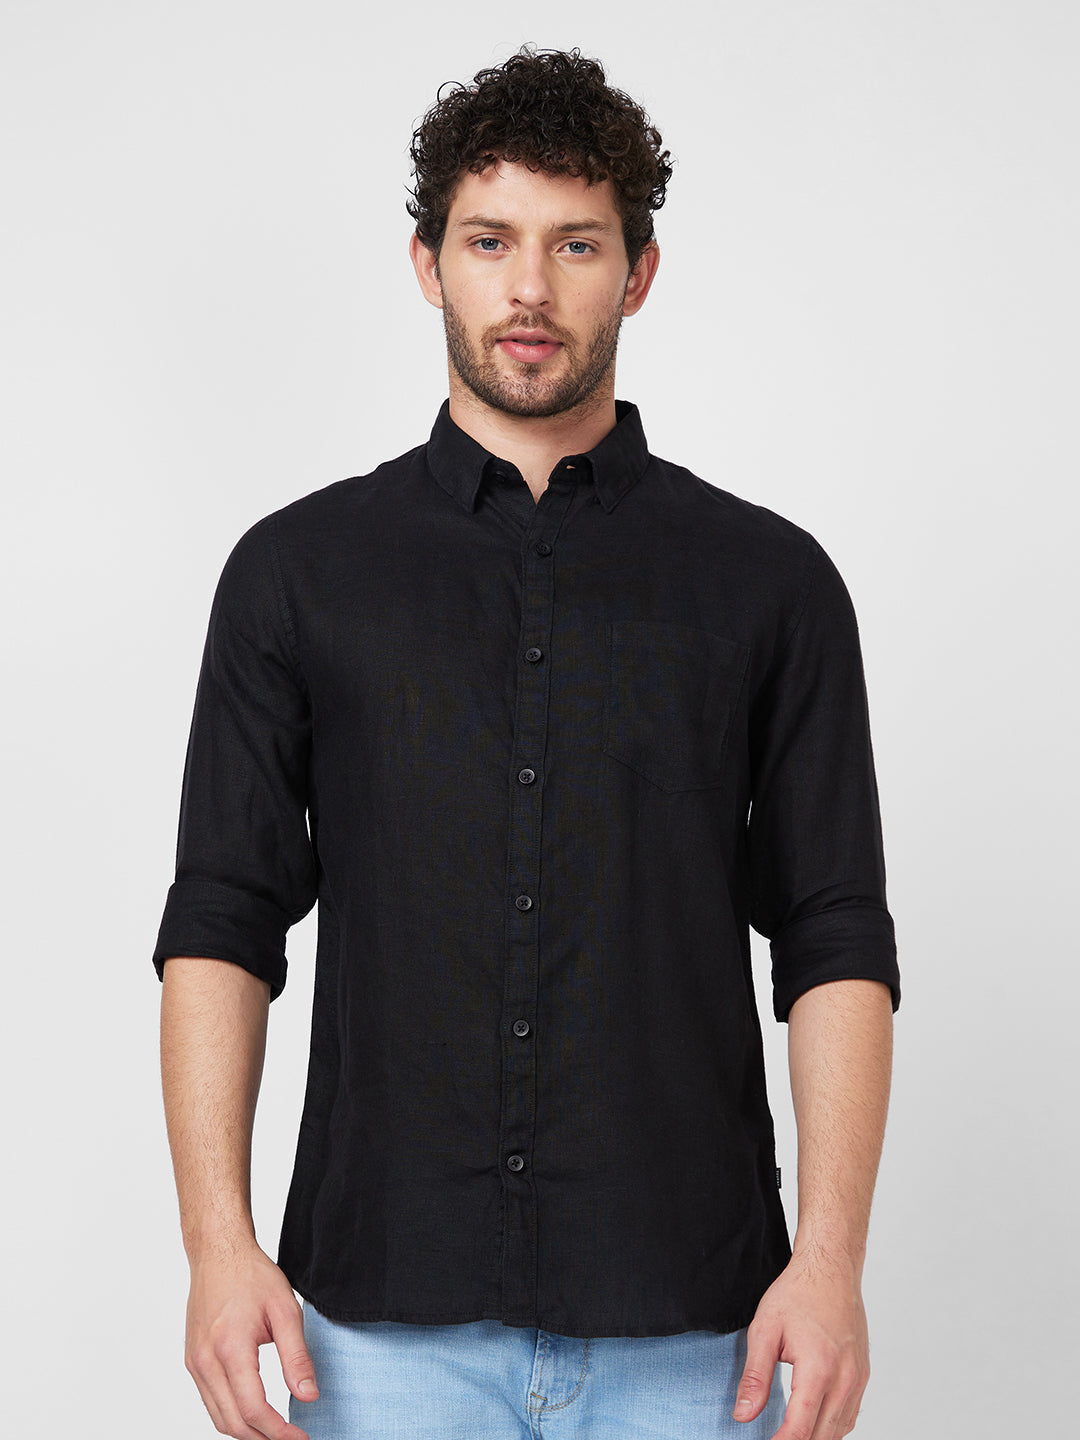 Spykar Full Sleeve Solid Black Shirt For Men